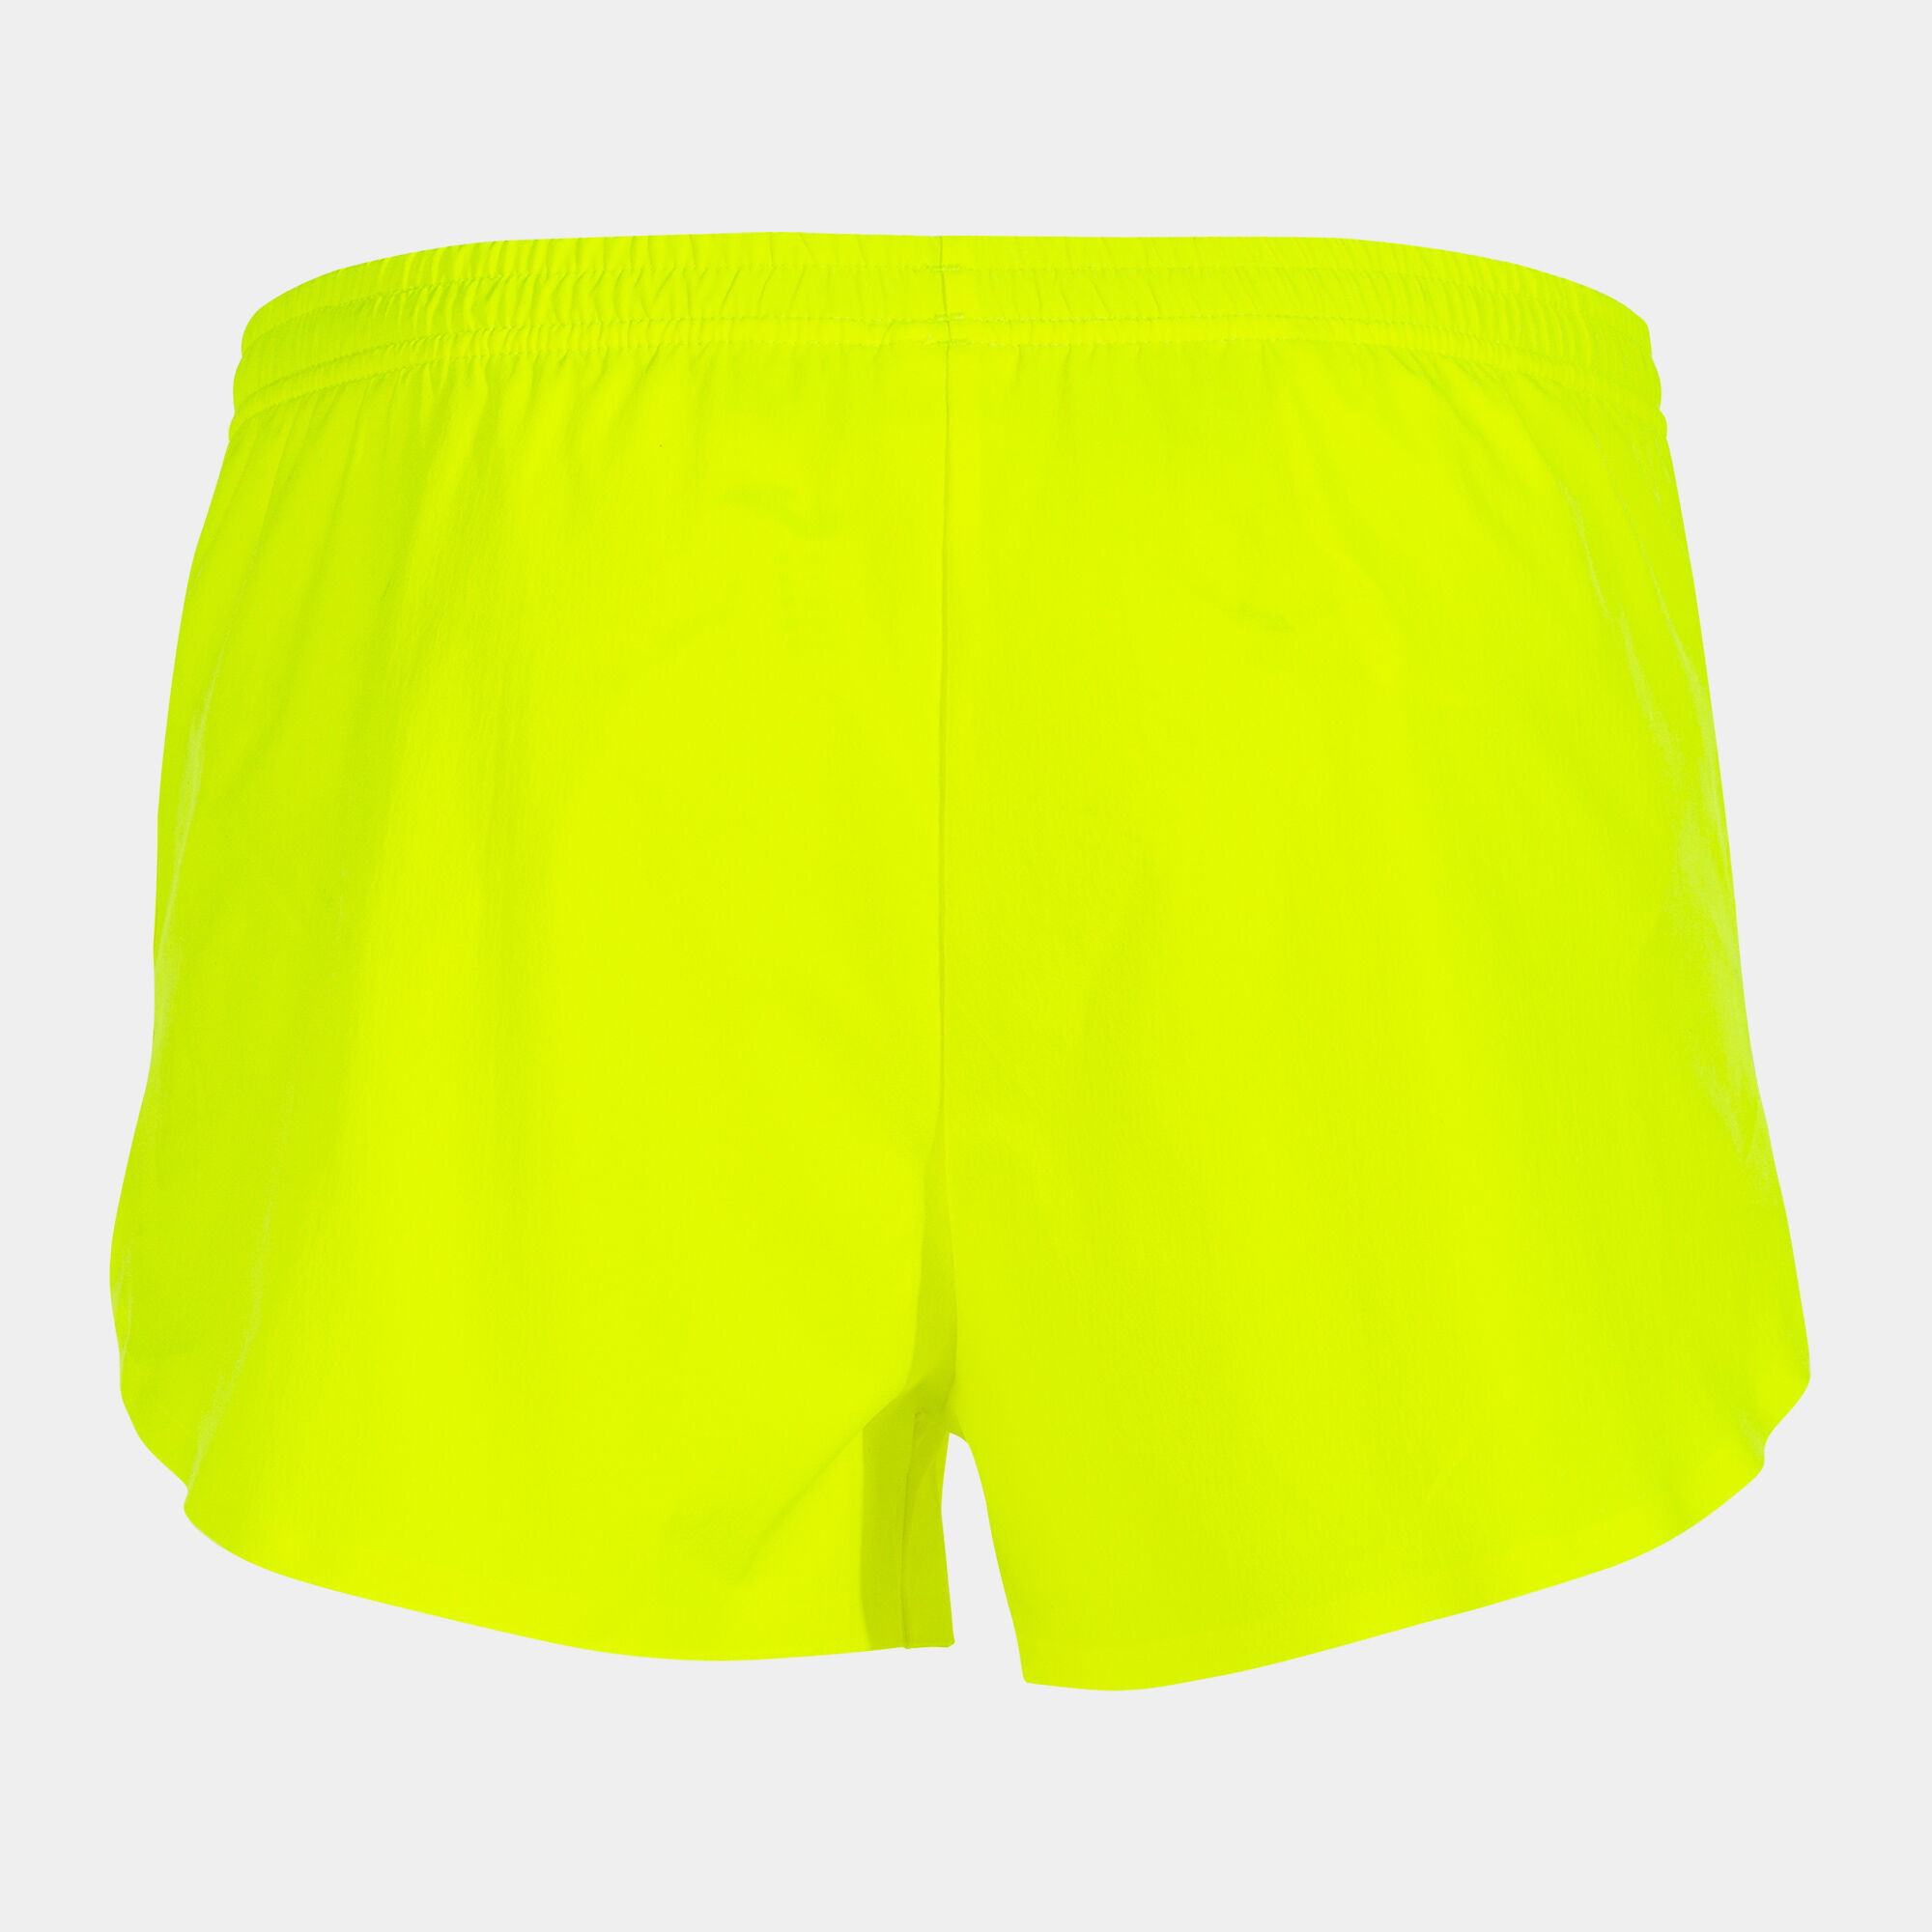 Pantaloncini uomo Olimpia giallo fluorescente